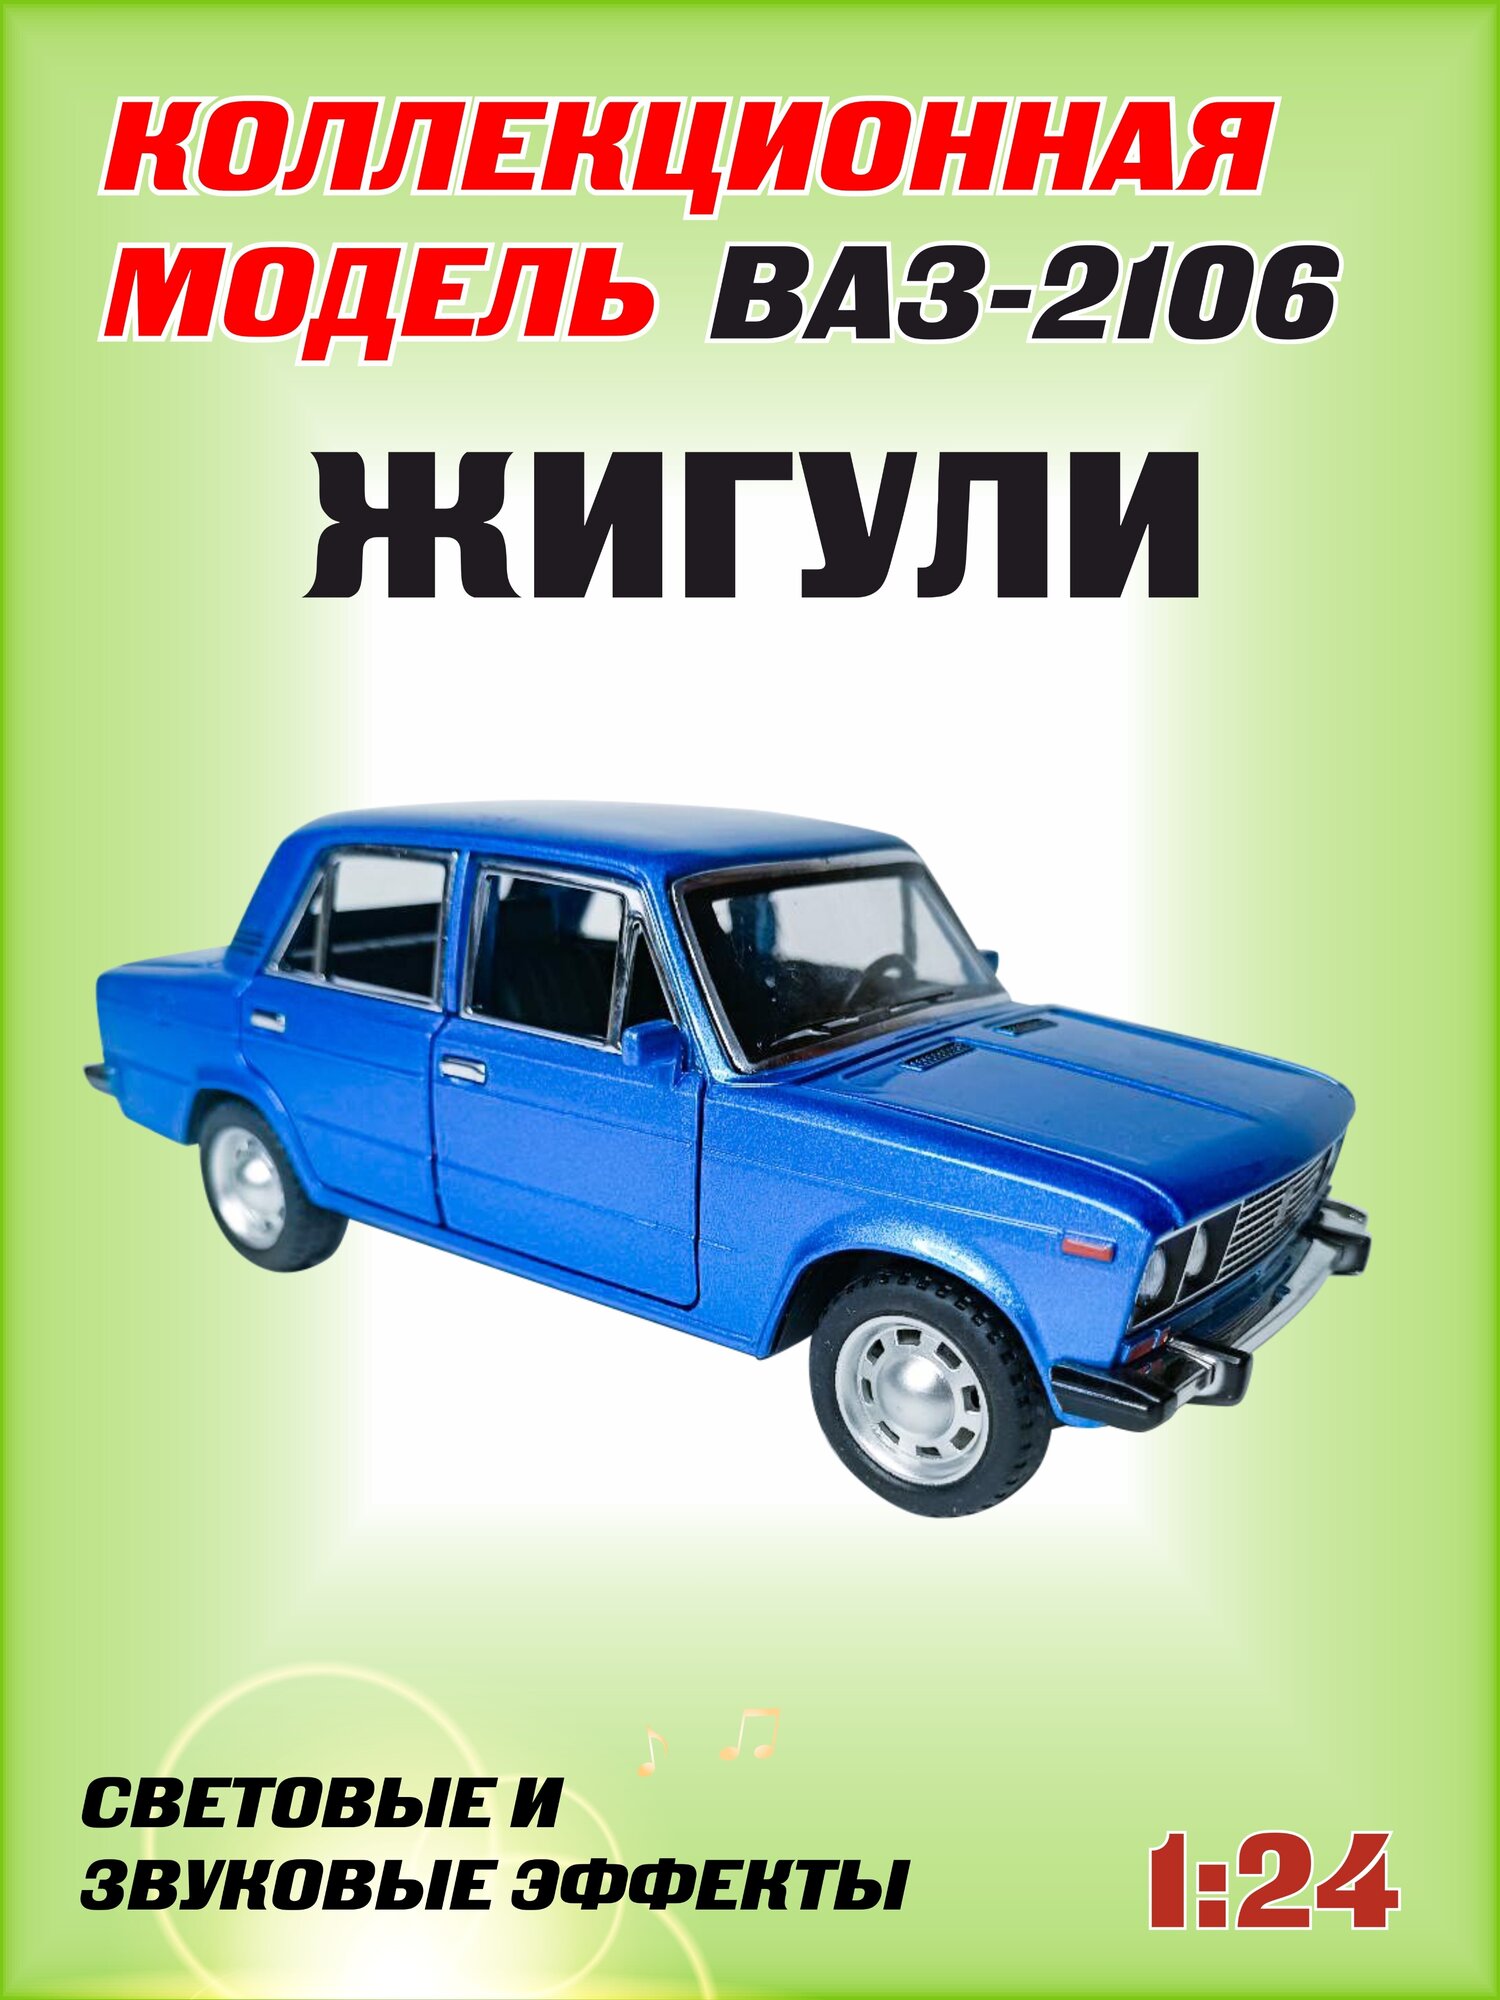 Коллекционная машинка игрушка металлическая Жигули ВАЗ 2106 для мальчиков масштабная модель 1:24 синяя